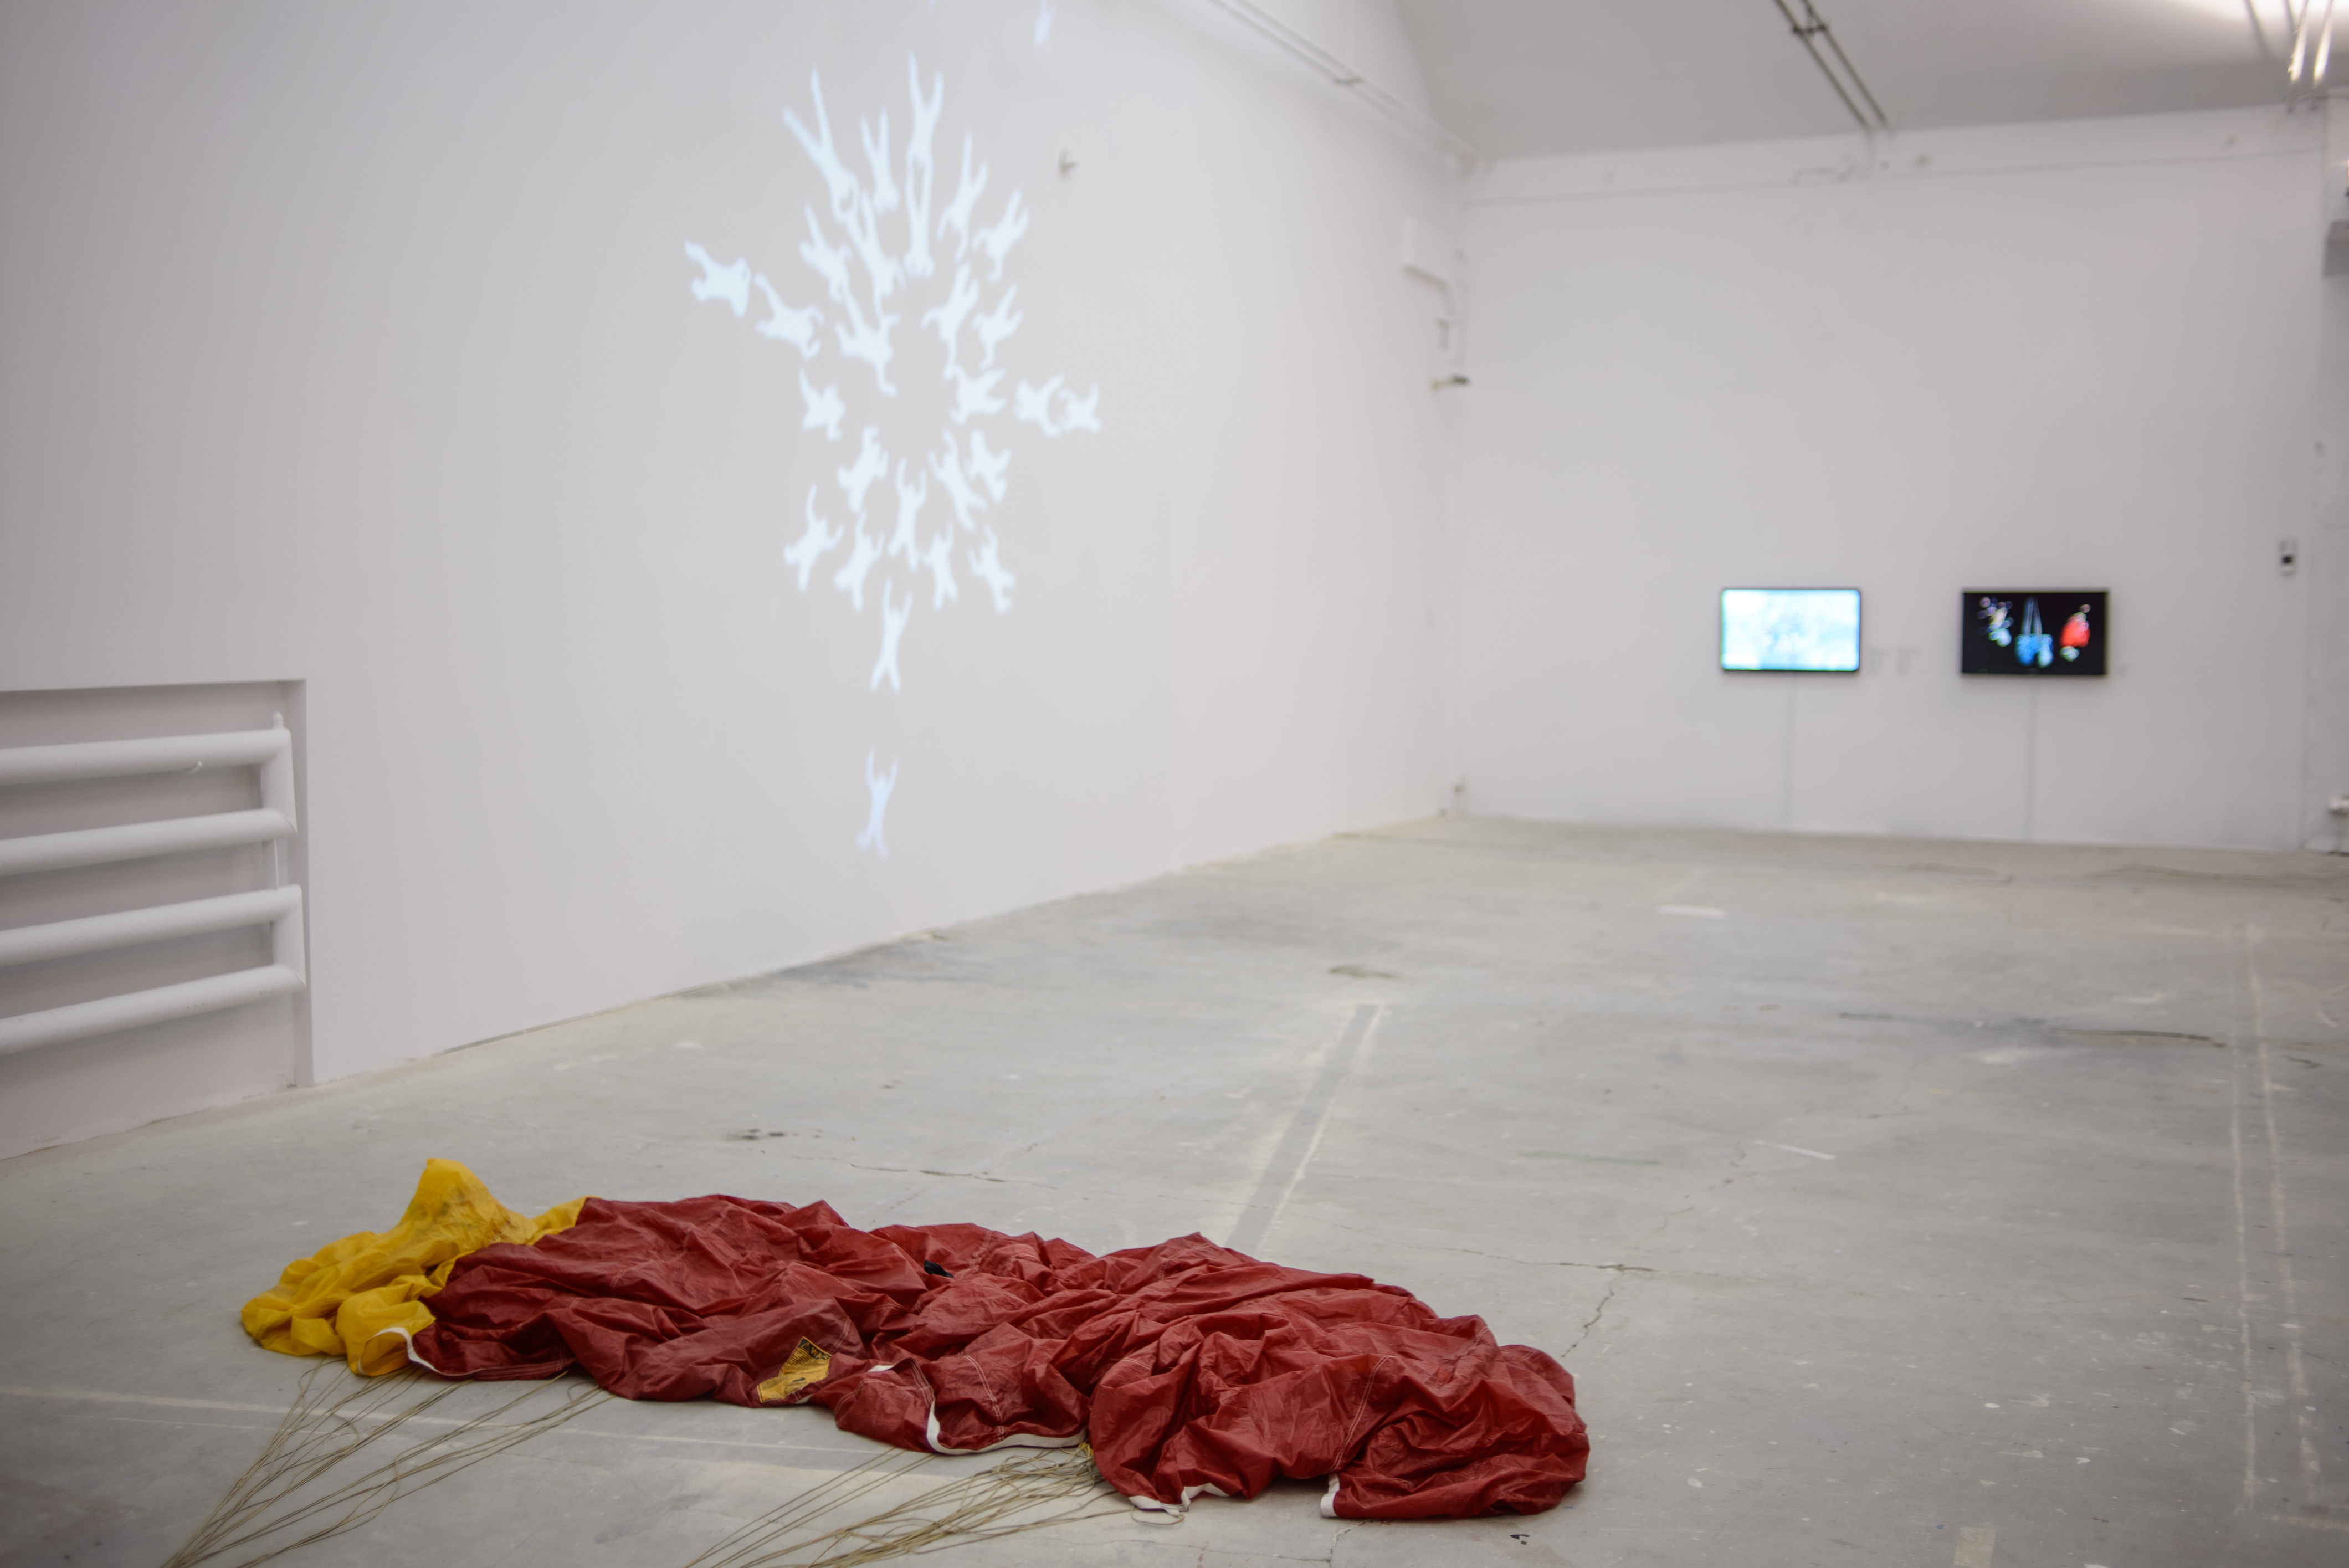 Dominik Lejman, "Parafold" (fragment, 2011)," Katedra 60s." (2011), "Katedra 60s.", dokumentacja (2011), "Fioletowy, Niebieski, Czerwony" (2012)